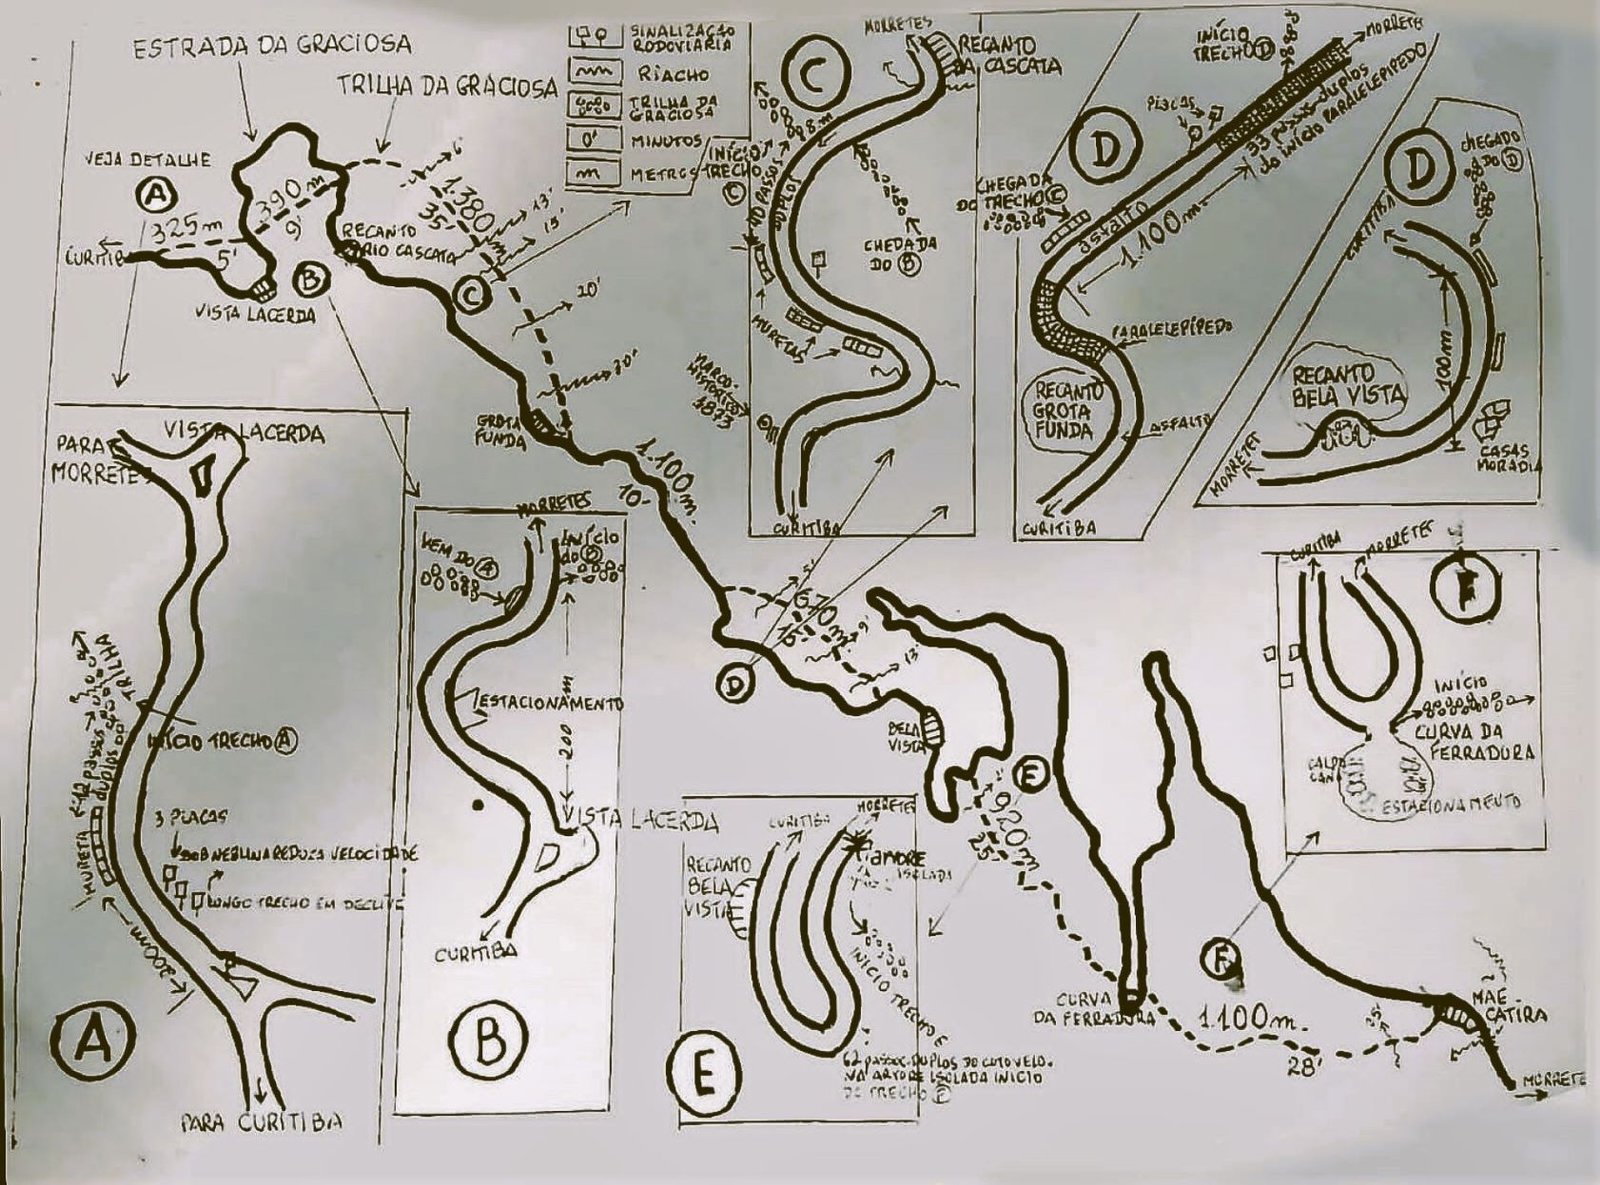 Mapa Ilustrativo do Caminhos da Serra da Graciosa